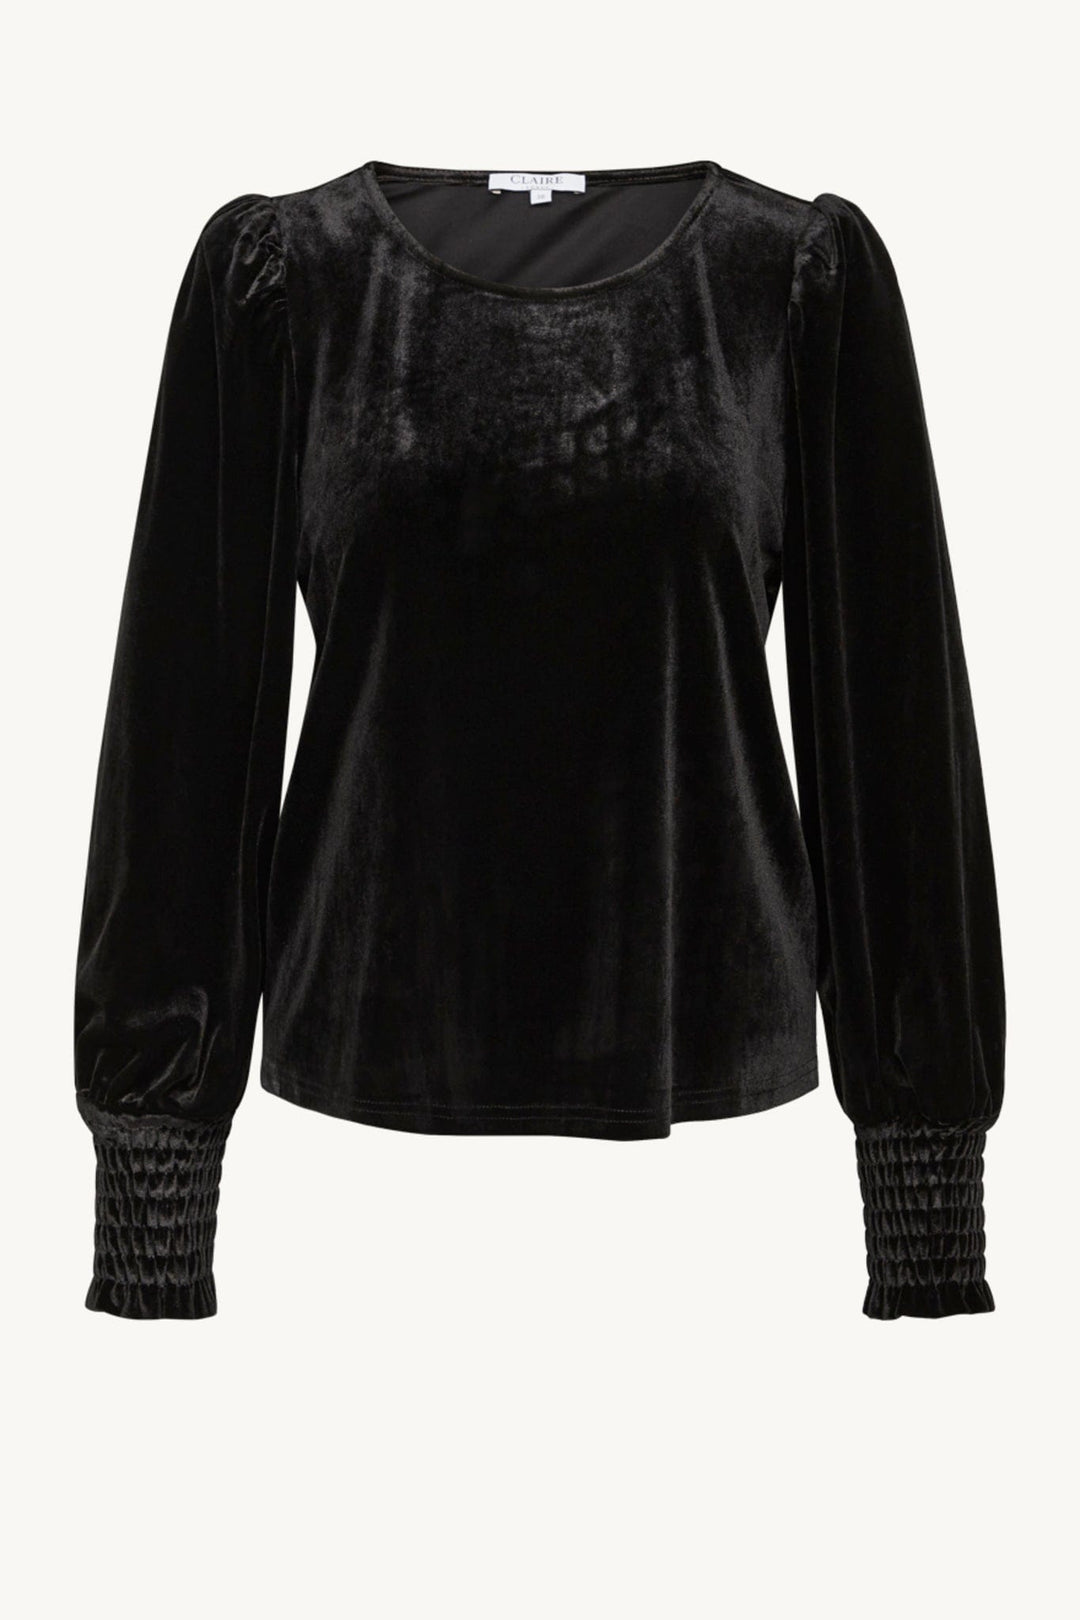 Alyssia-Cw - Blouse Black | Skjorter og bluser | Smuk - Dameklær på nett